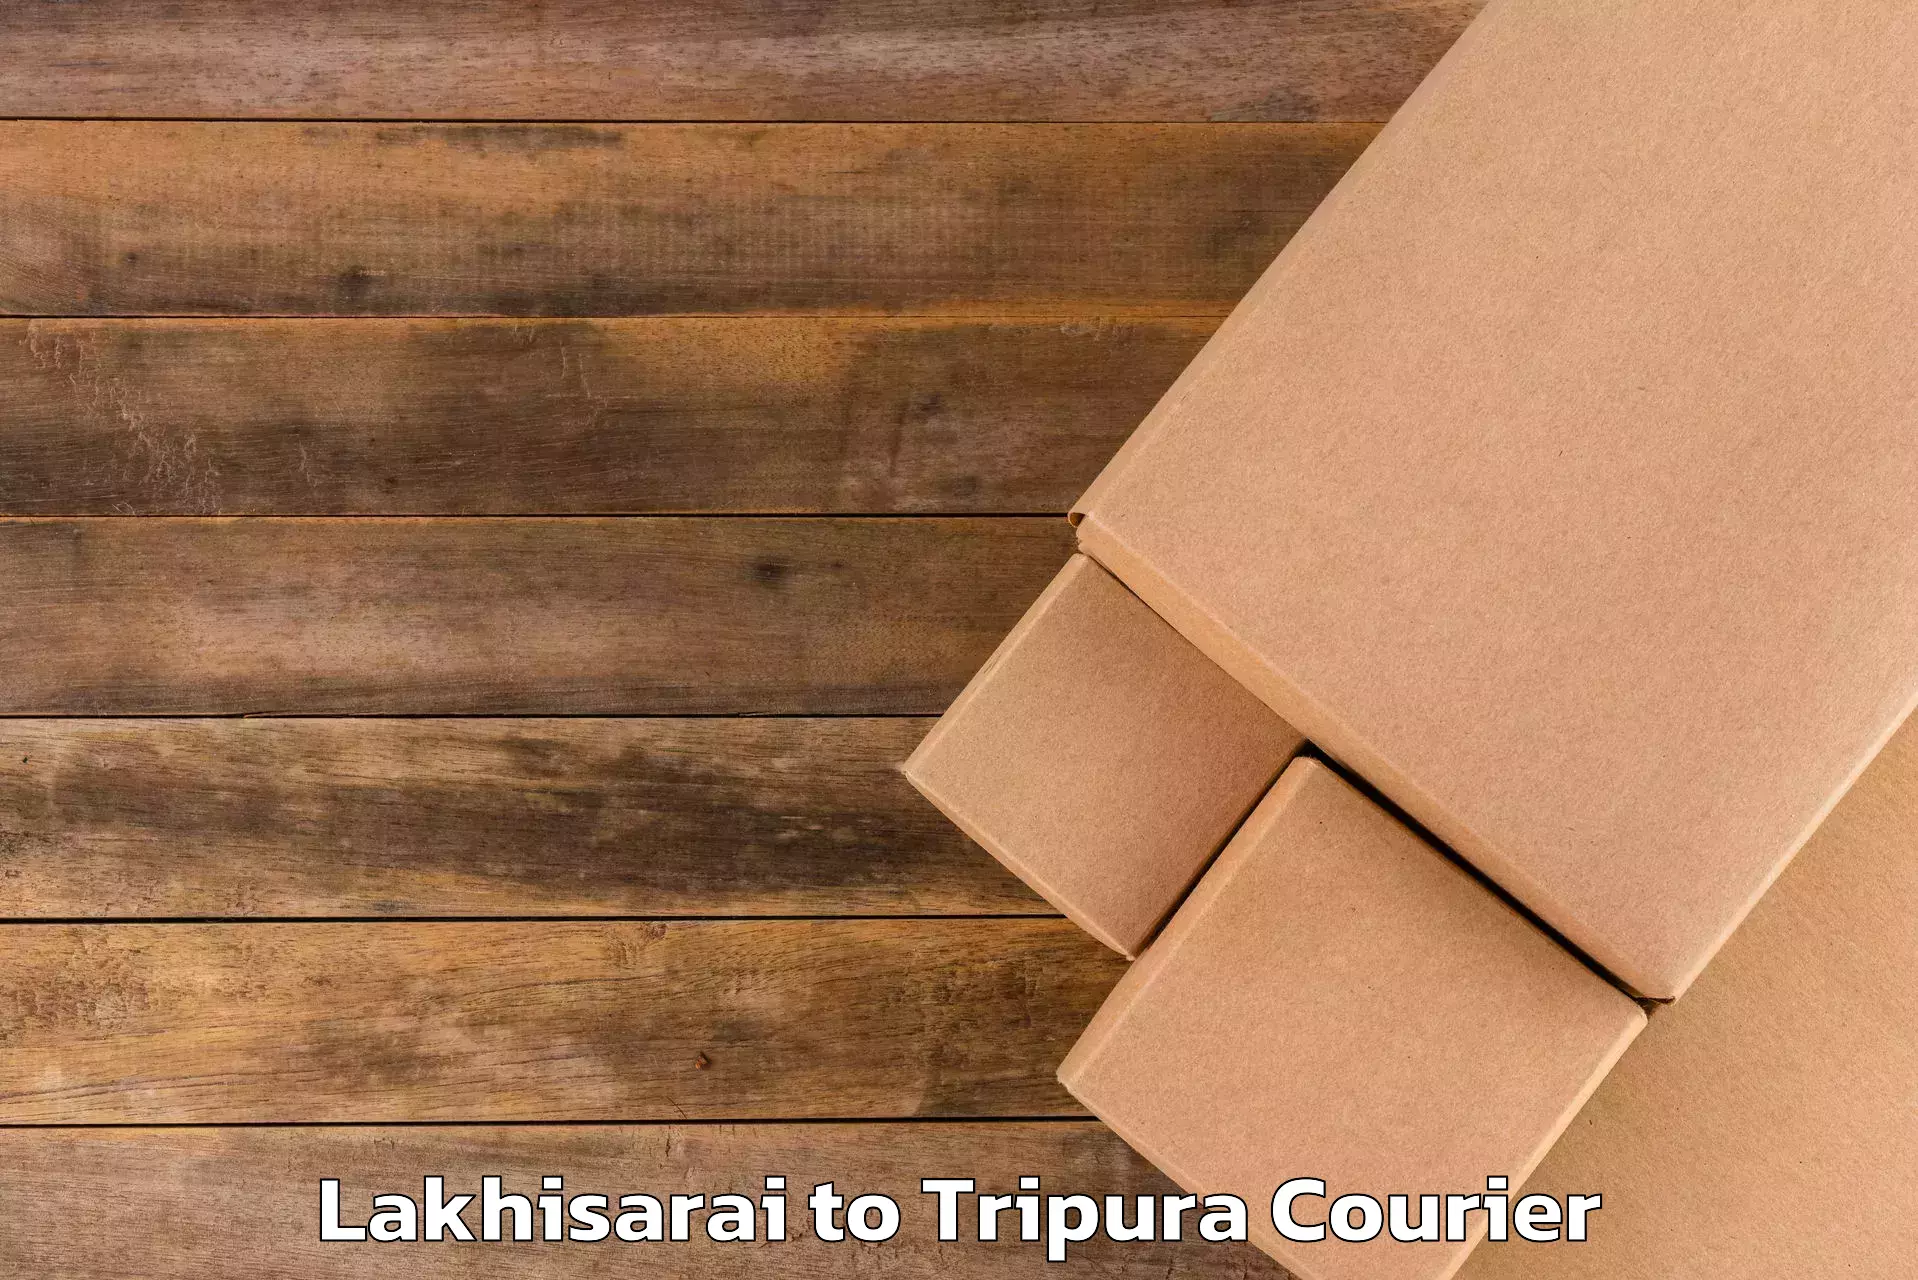 Luggage delivery app Lakhisarai to Kumarghat